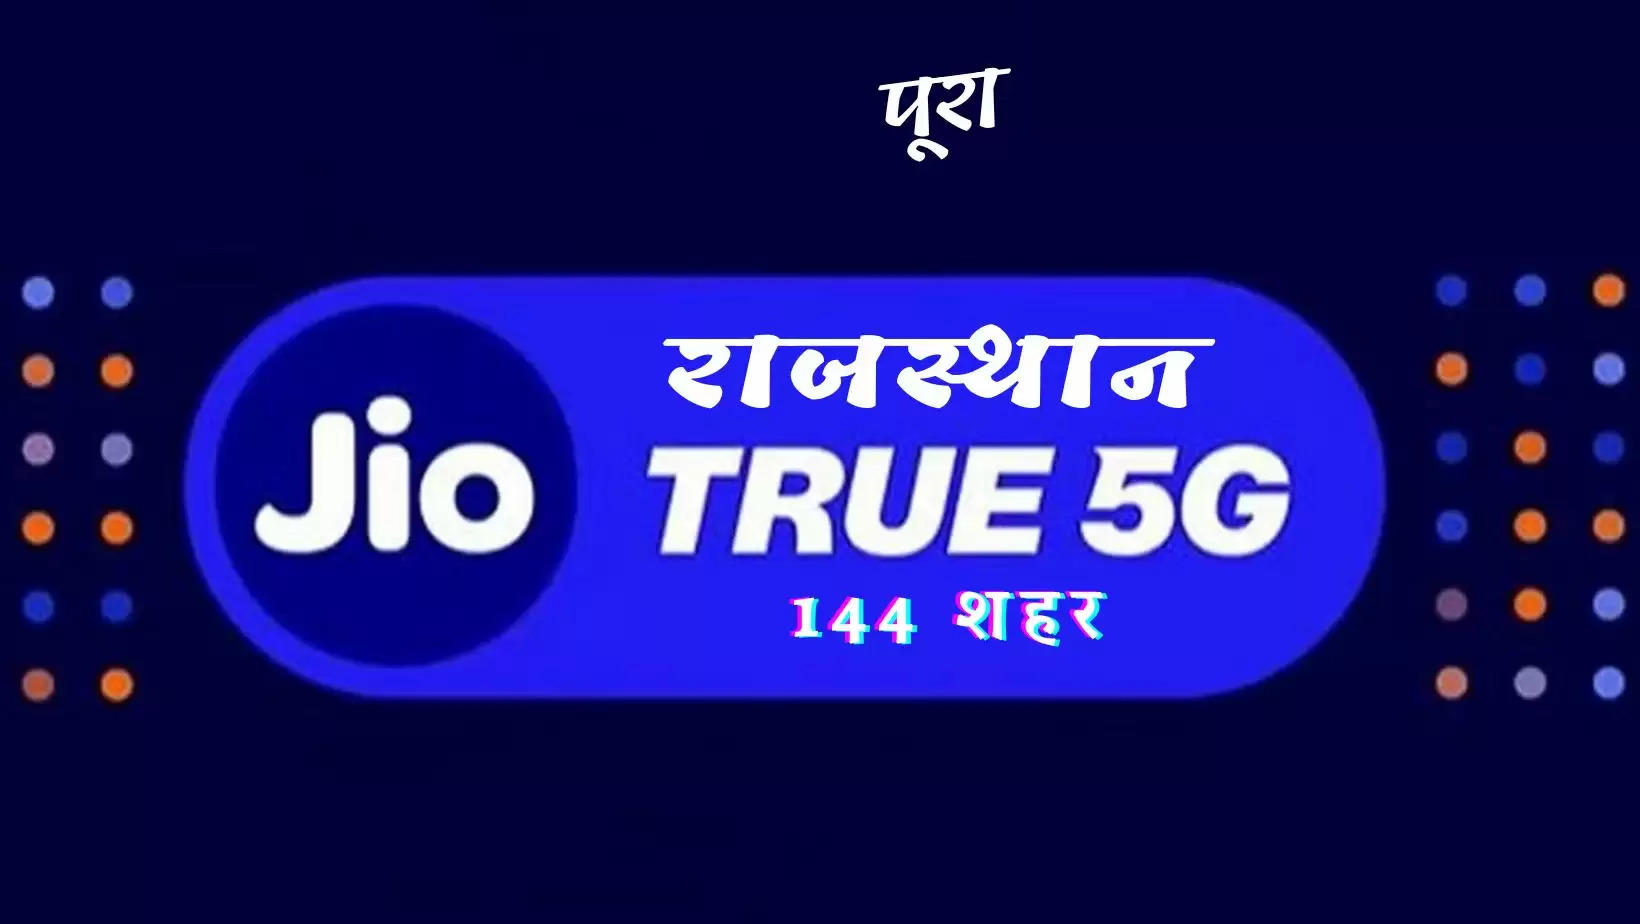 Jio True 5G Services Across 144 Cities in Rajasthan, Jaipur, Jodhpur, Kota, Ajmer, Udaipur, Bikaner, Alwar, Sikar, Barmer, Bhilwara